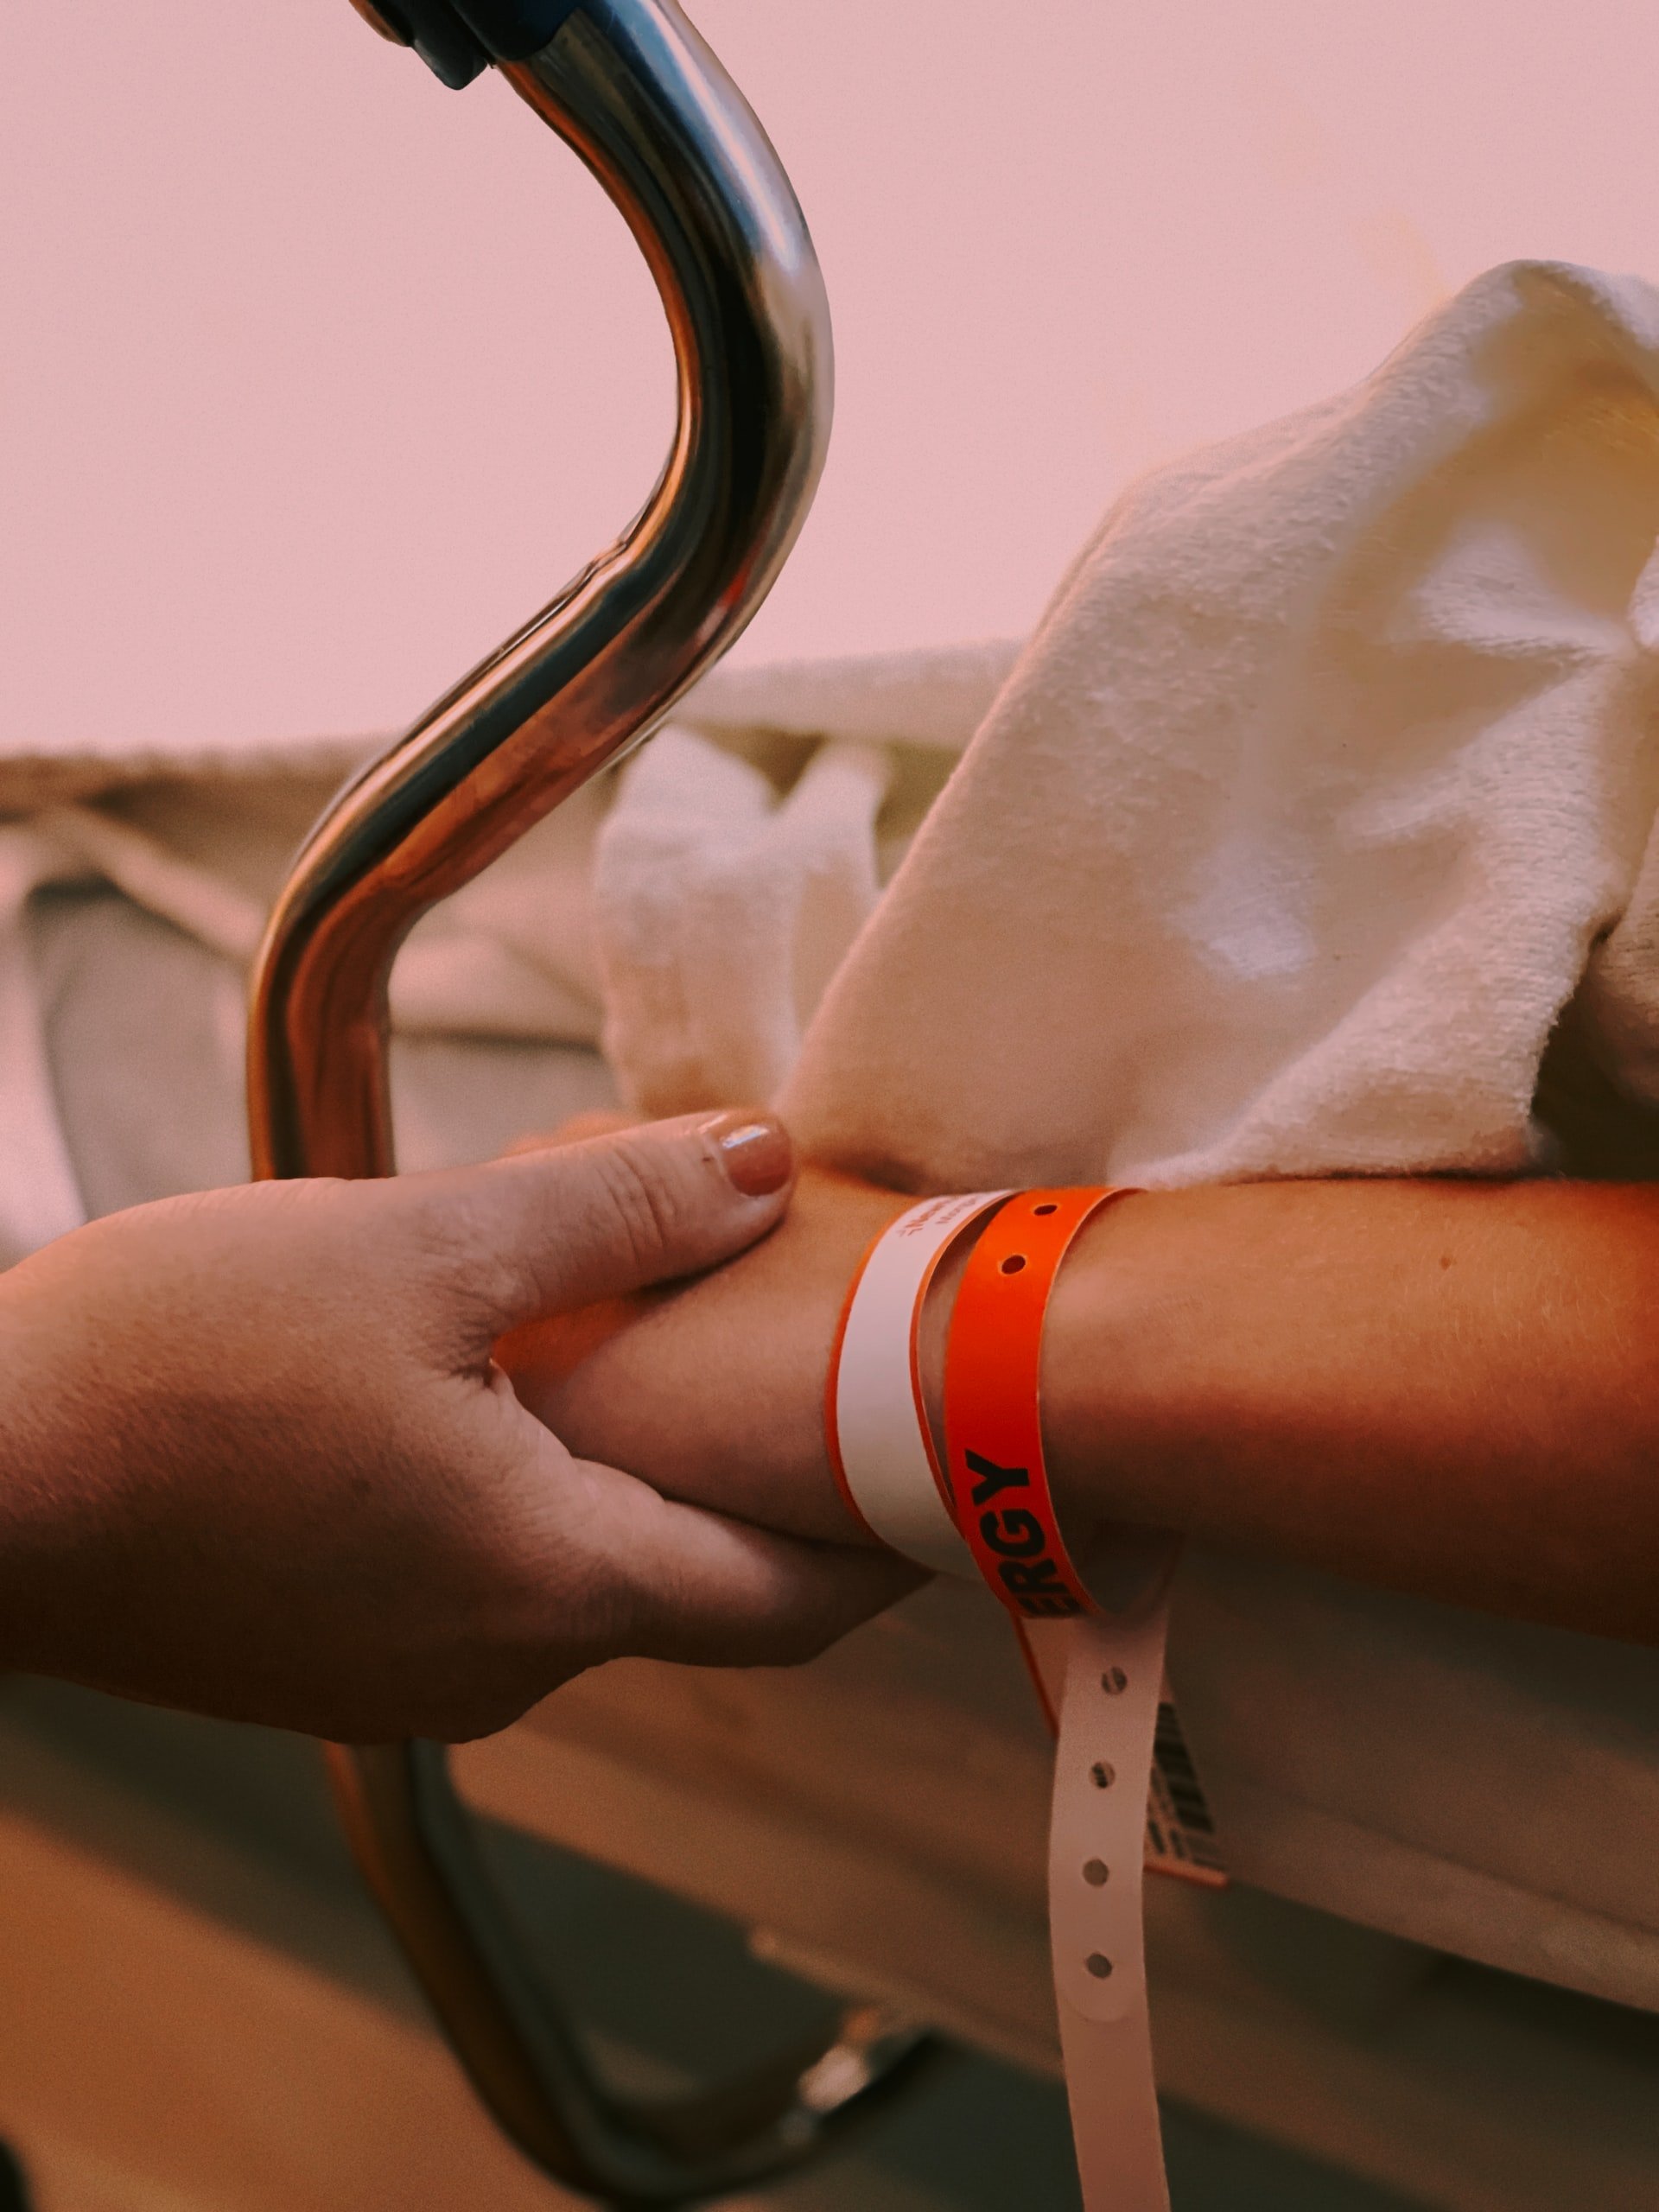 Un hombre tomando la mano de una persona recostada en la cama de un hospital. | Foto: Unsplash